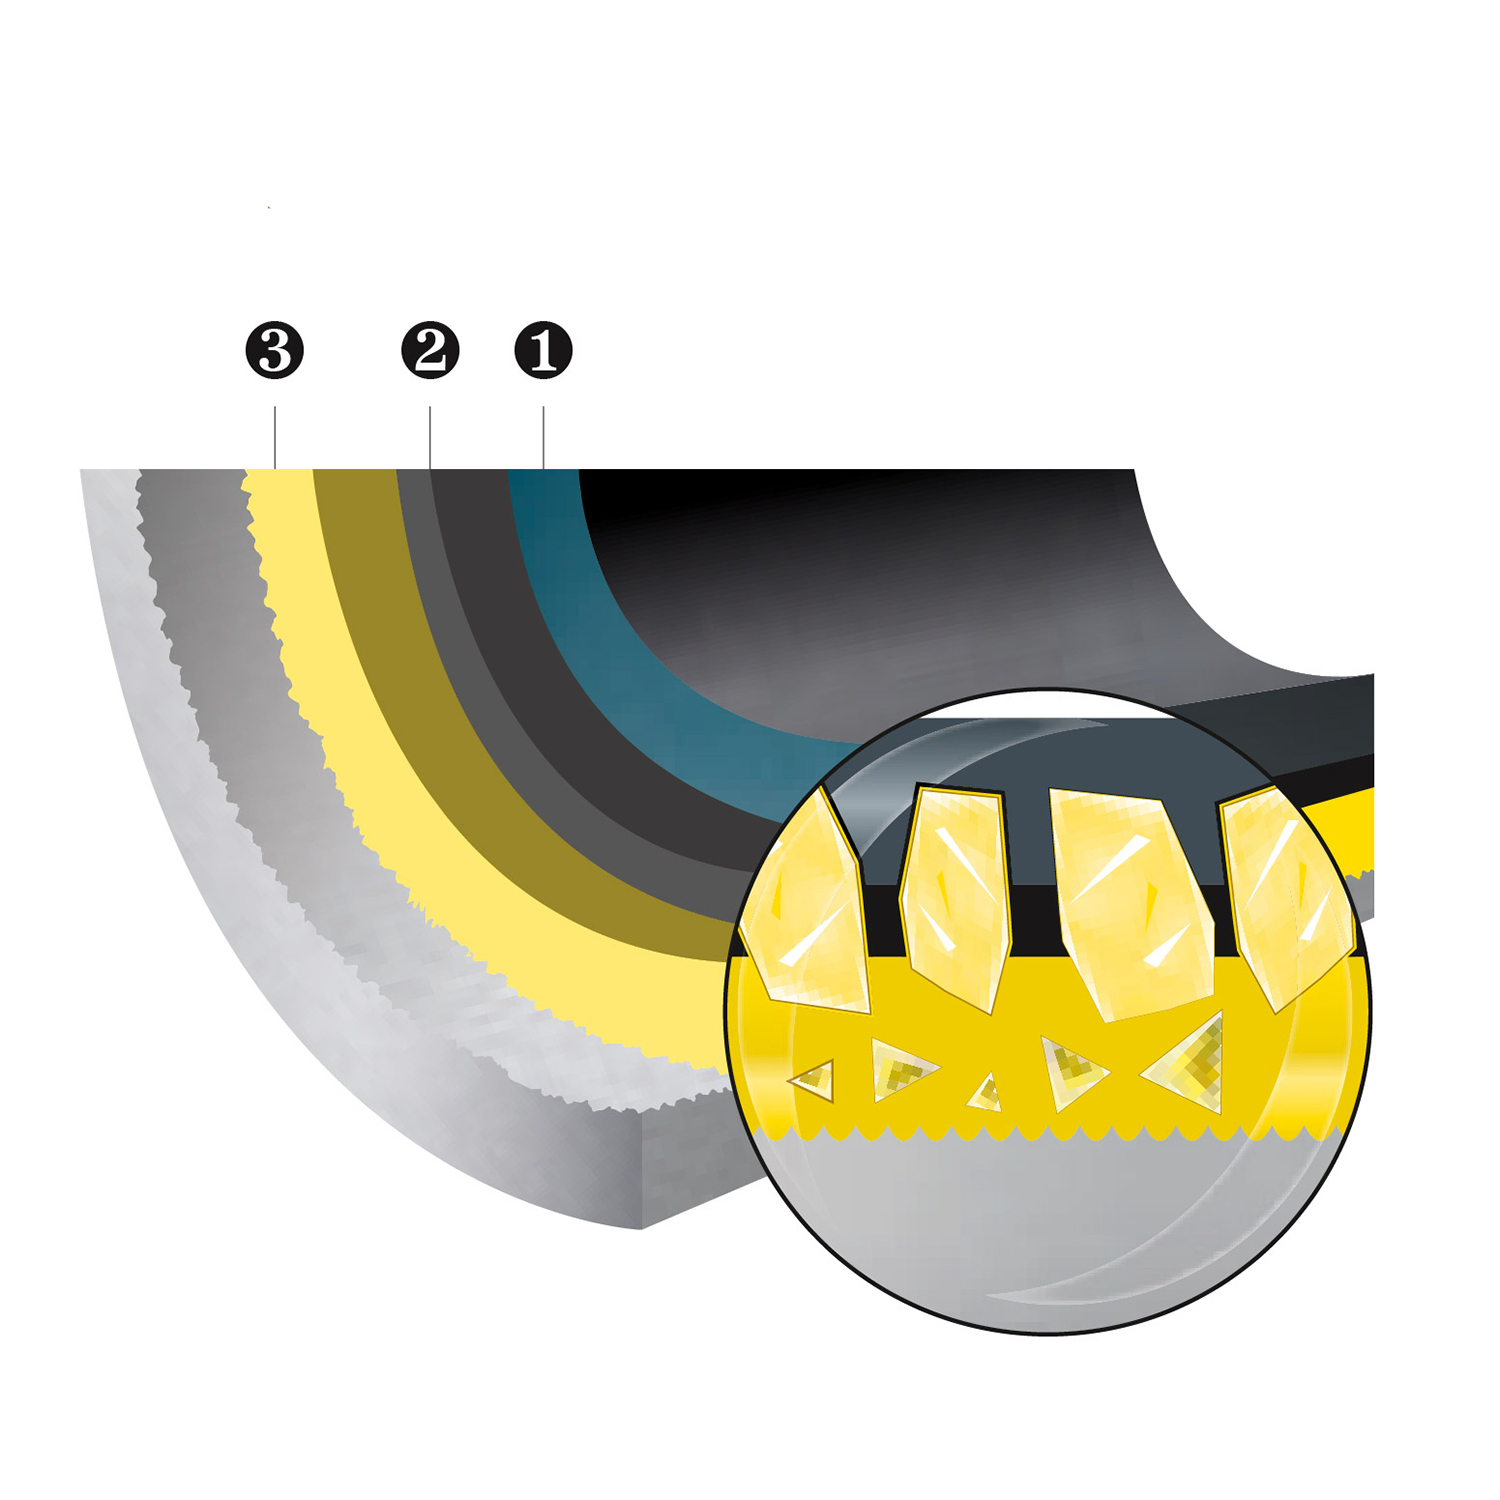 Smile MGK-16 Cazuela Alta inducción con tapa de cristal 24cm, 4 litros, Antiadherente ILAG sin PFOA, aluminio fundido, asas color madera, Apta todas las cocinas, vitroceramica, gas, lavavajillas